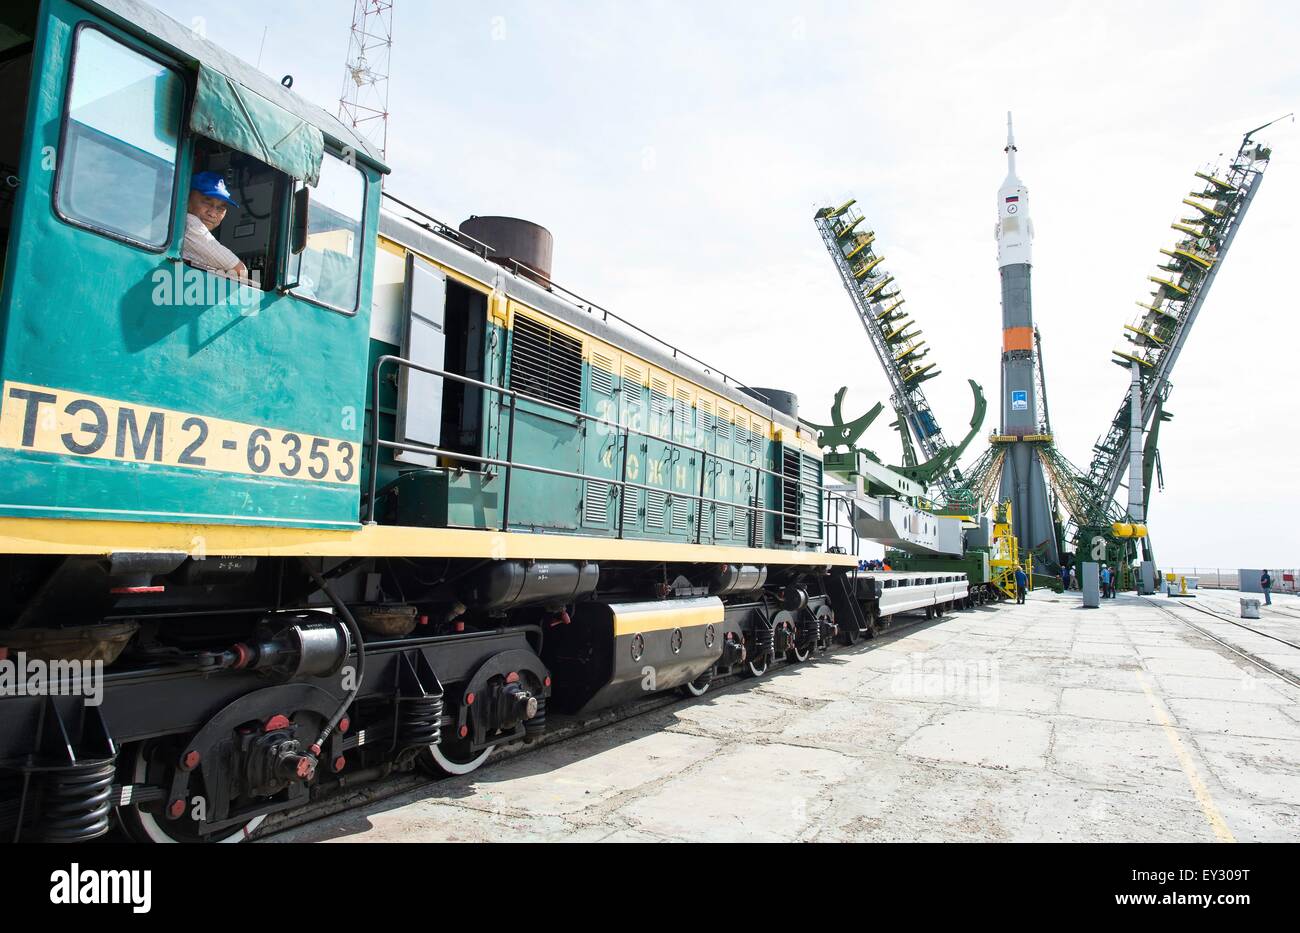 Cosmodromo di Baikonur in Kazakhstan. Il 20 luglio, 2015. Il Soyuz TMA-17M veicolo spaziale è sollevato in posizione sulla rampa di lancio presso il cosmodromo di Baikonur Luglio 20, 2015 in Kazakistan. Lancio del razzo Soyuz è prevista per il mese di luglio 23 e porterà Expedition 44 equipaggio alla Stazione spaziale internazionale. Foto Stock